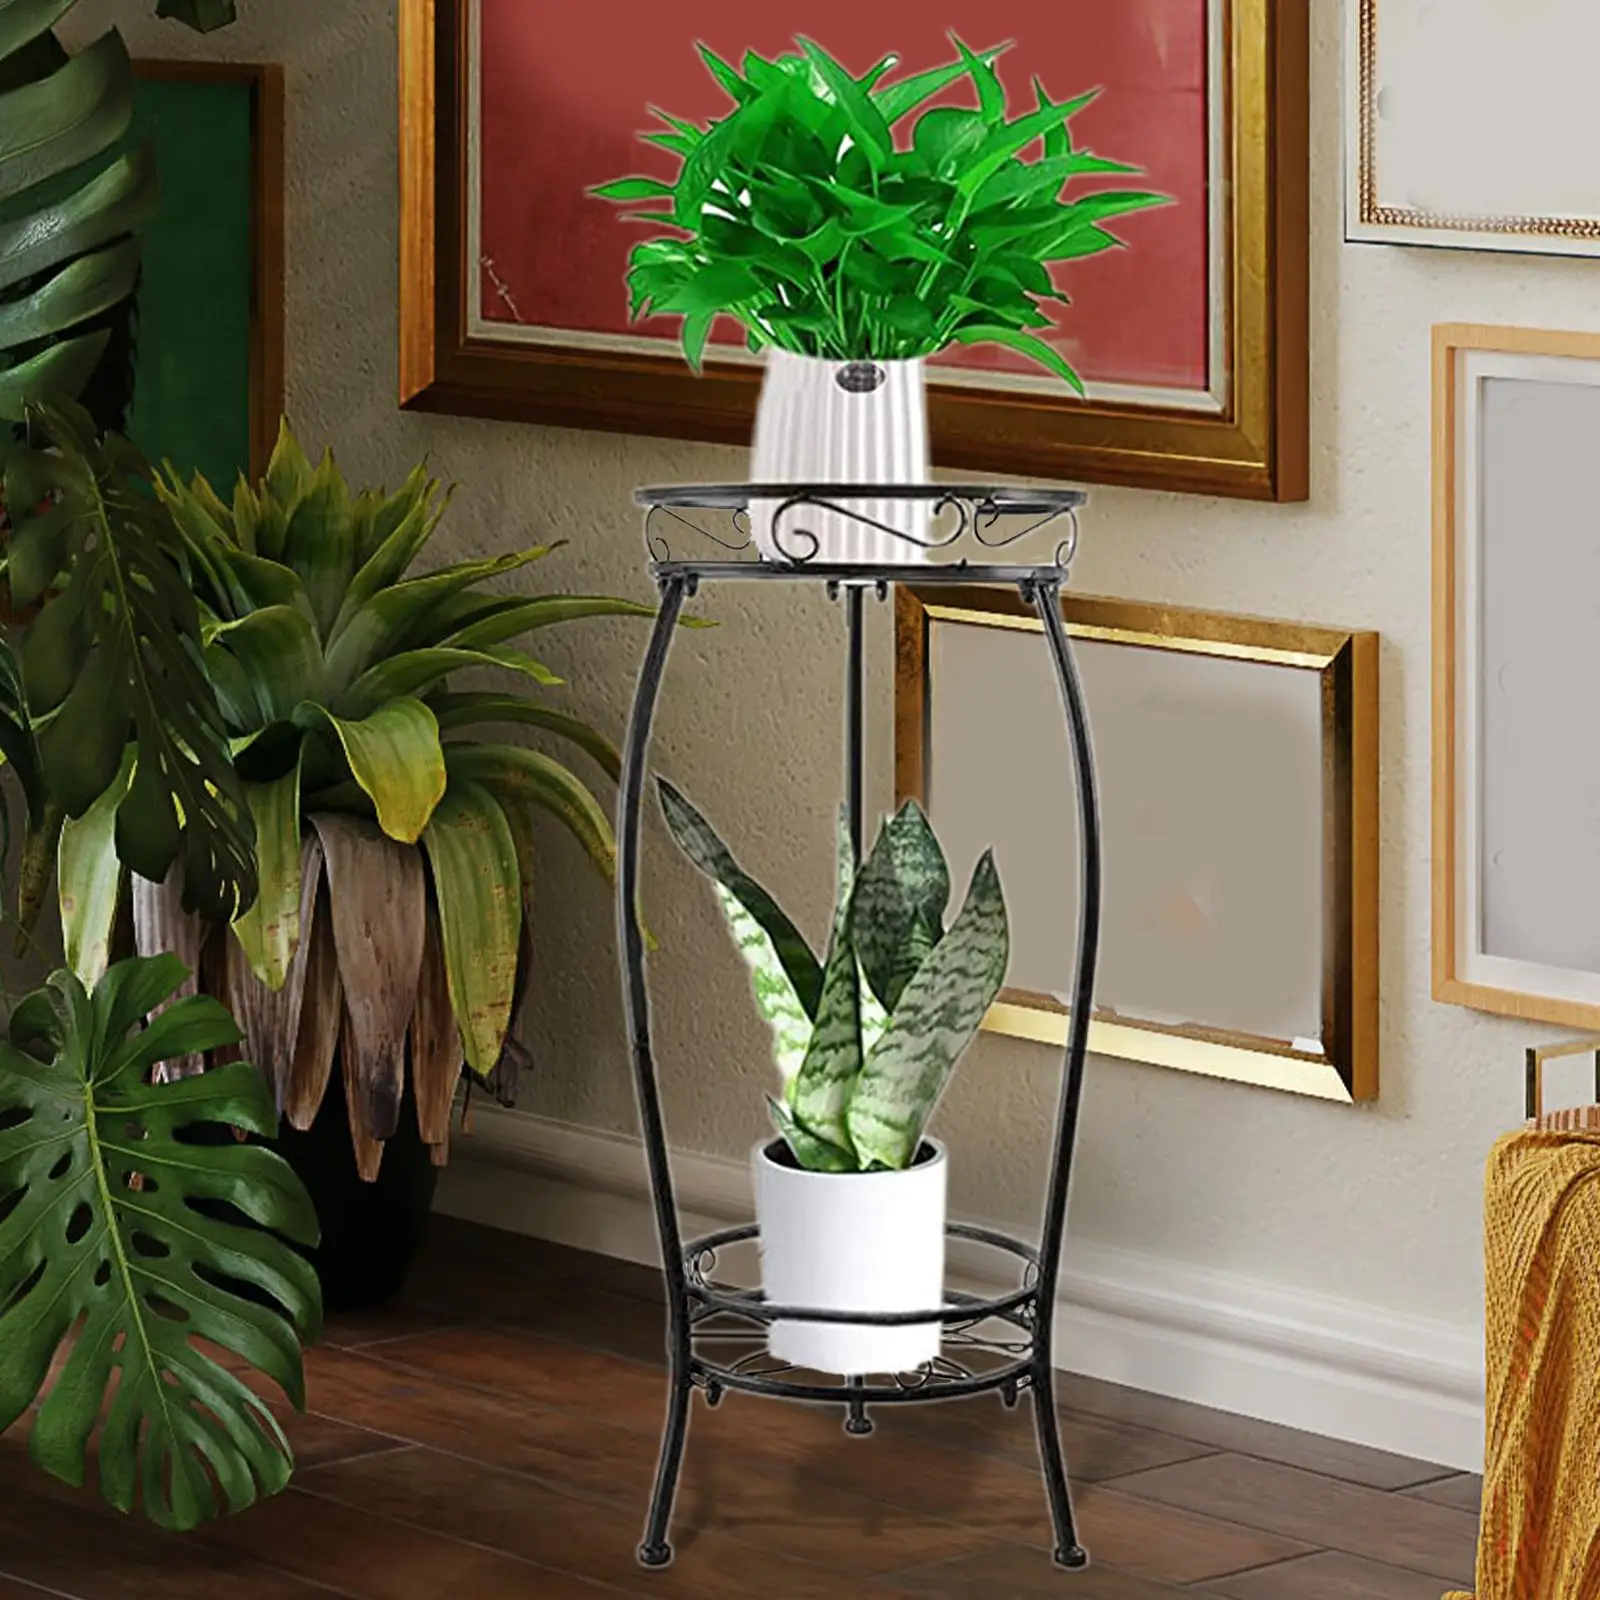 2 Tier Flower Pot Display Rack Planter Shelves Floor Standing Potted Holder Rack Wrought Iron for Indoor Outdoor Living Room